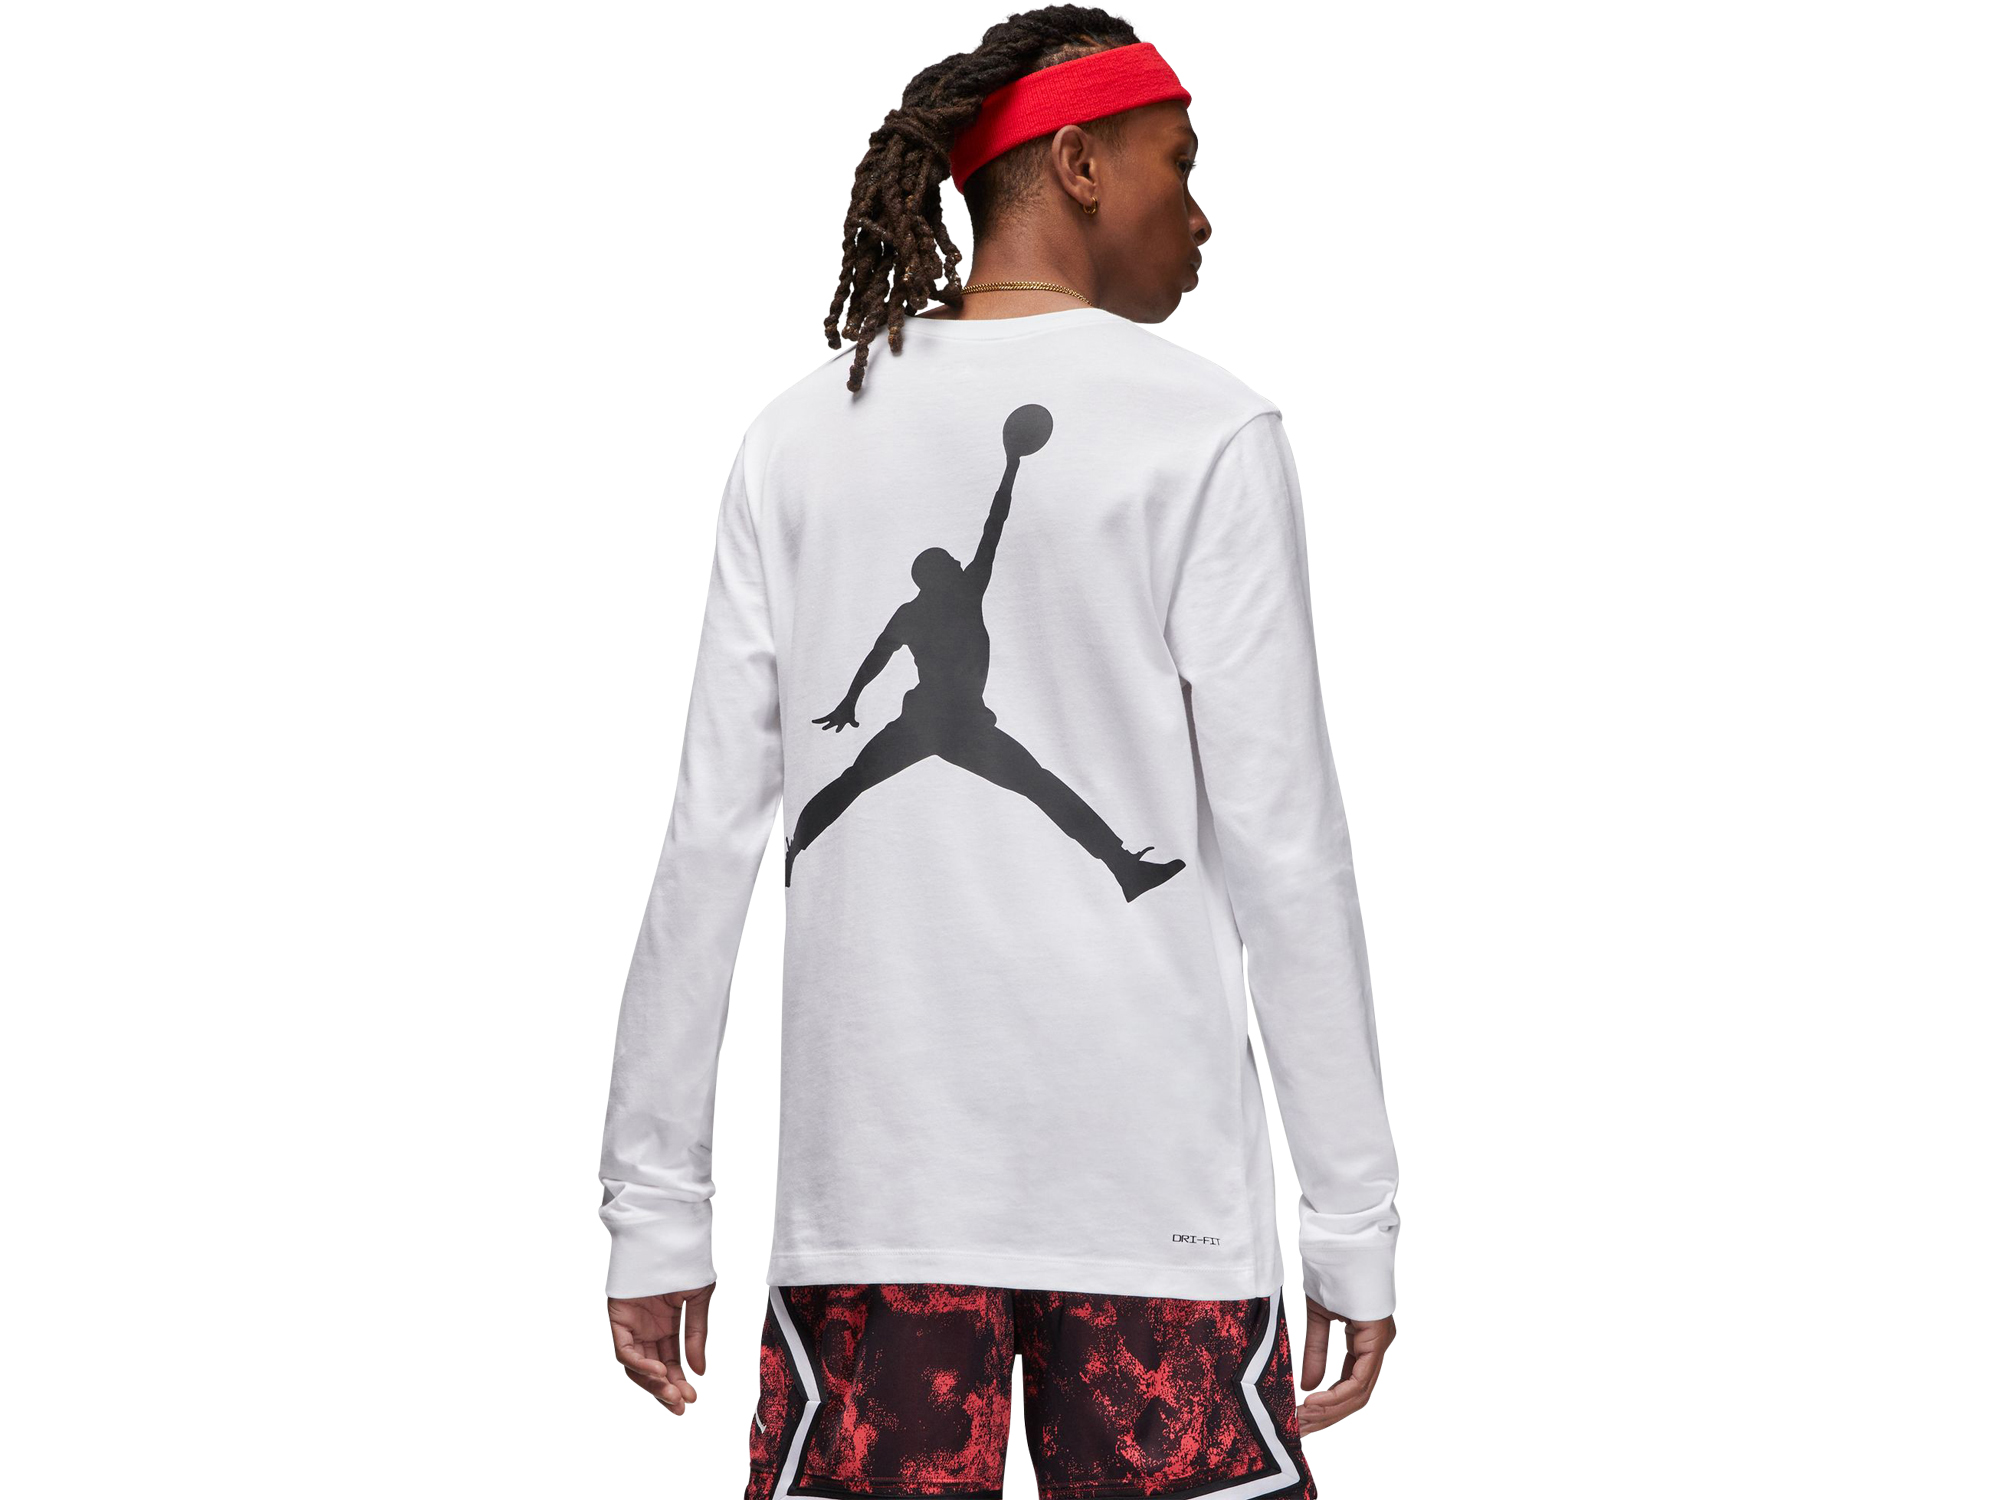 Jordan Graphic Longsleeve Shirt